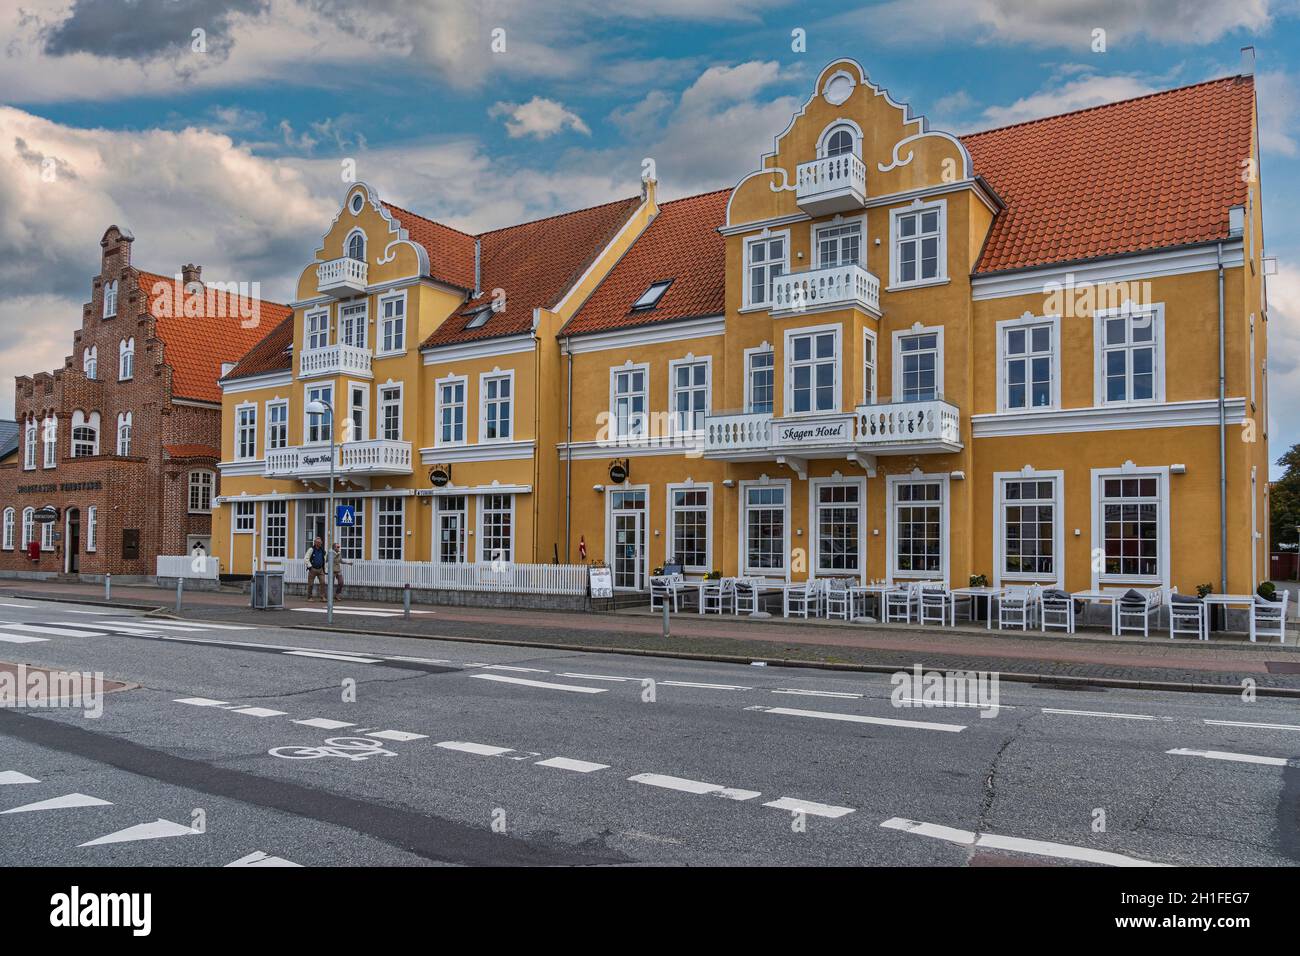 Hotels, restaurants, and shops for shopping on Sankt Laurentii Vej in Skagen. Skagen, Frederikshavn, North Jutland, Vendsyssel-Thy, Denmark, Europe Stock Photo